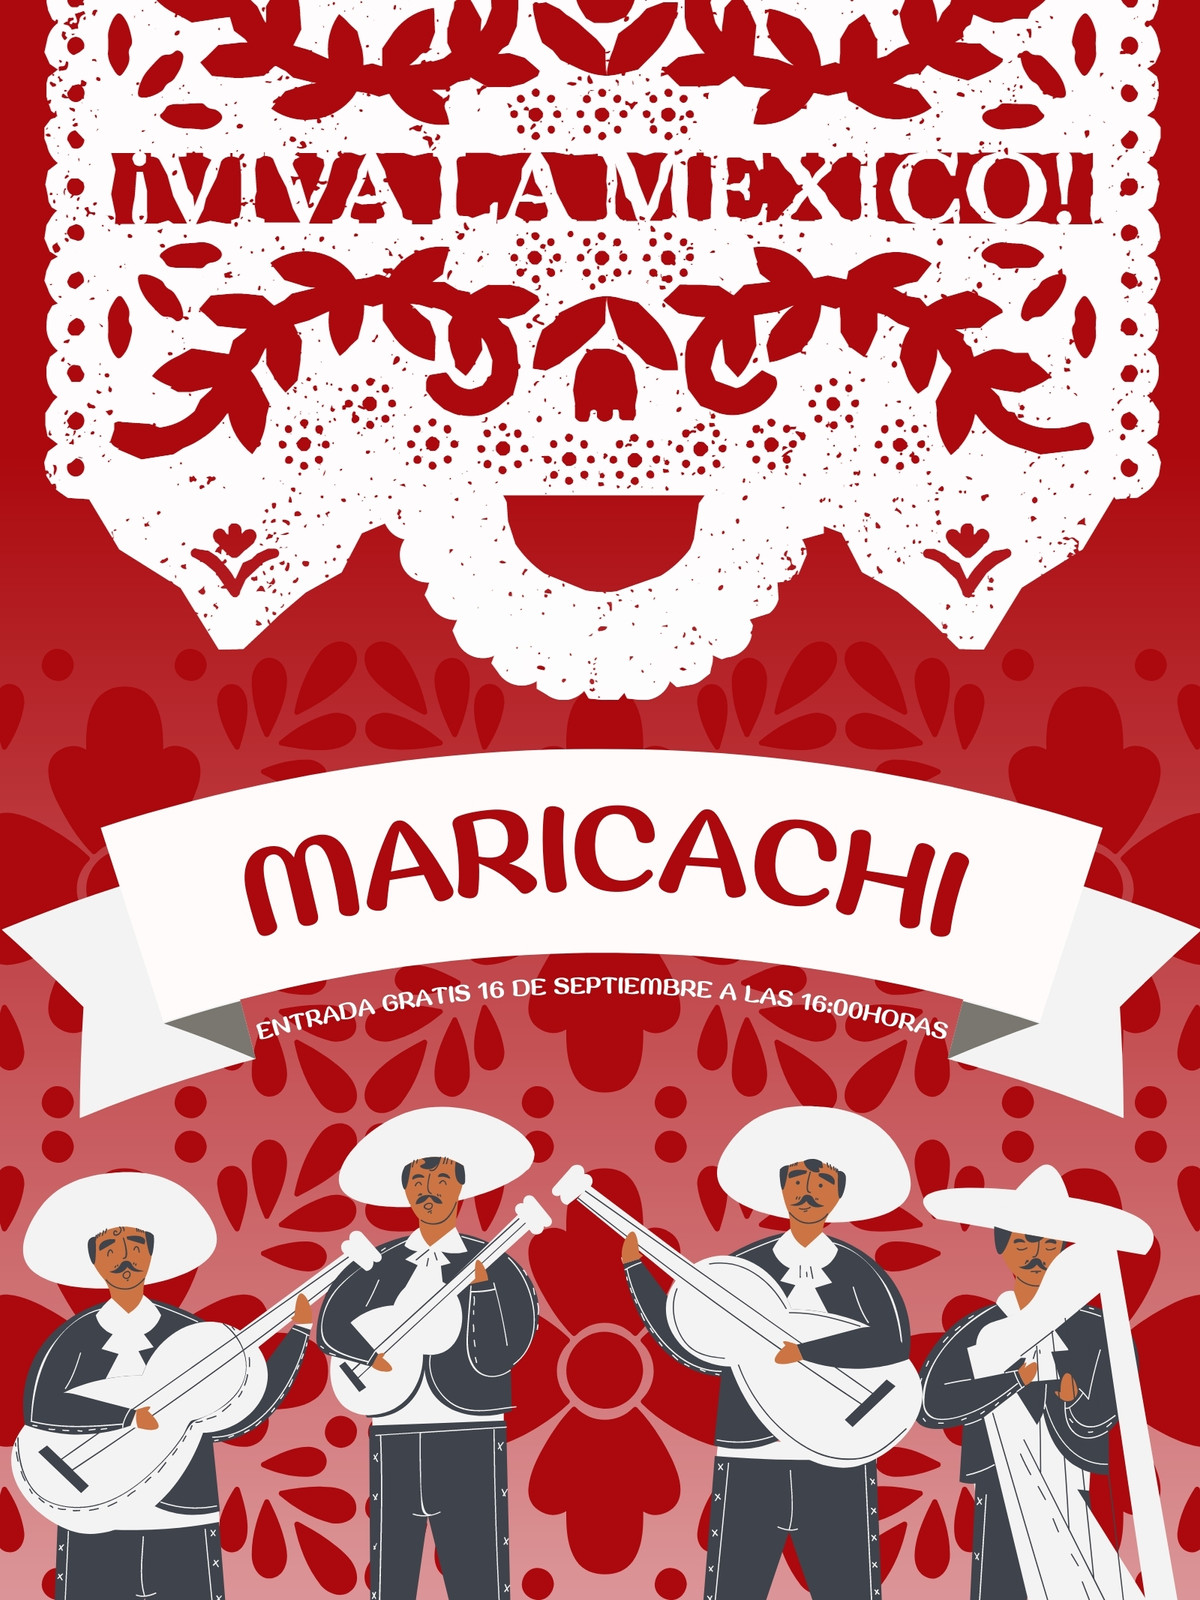 Plantillas mariachi - Gratis y editables - Canva